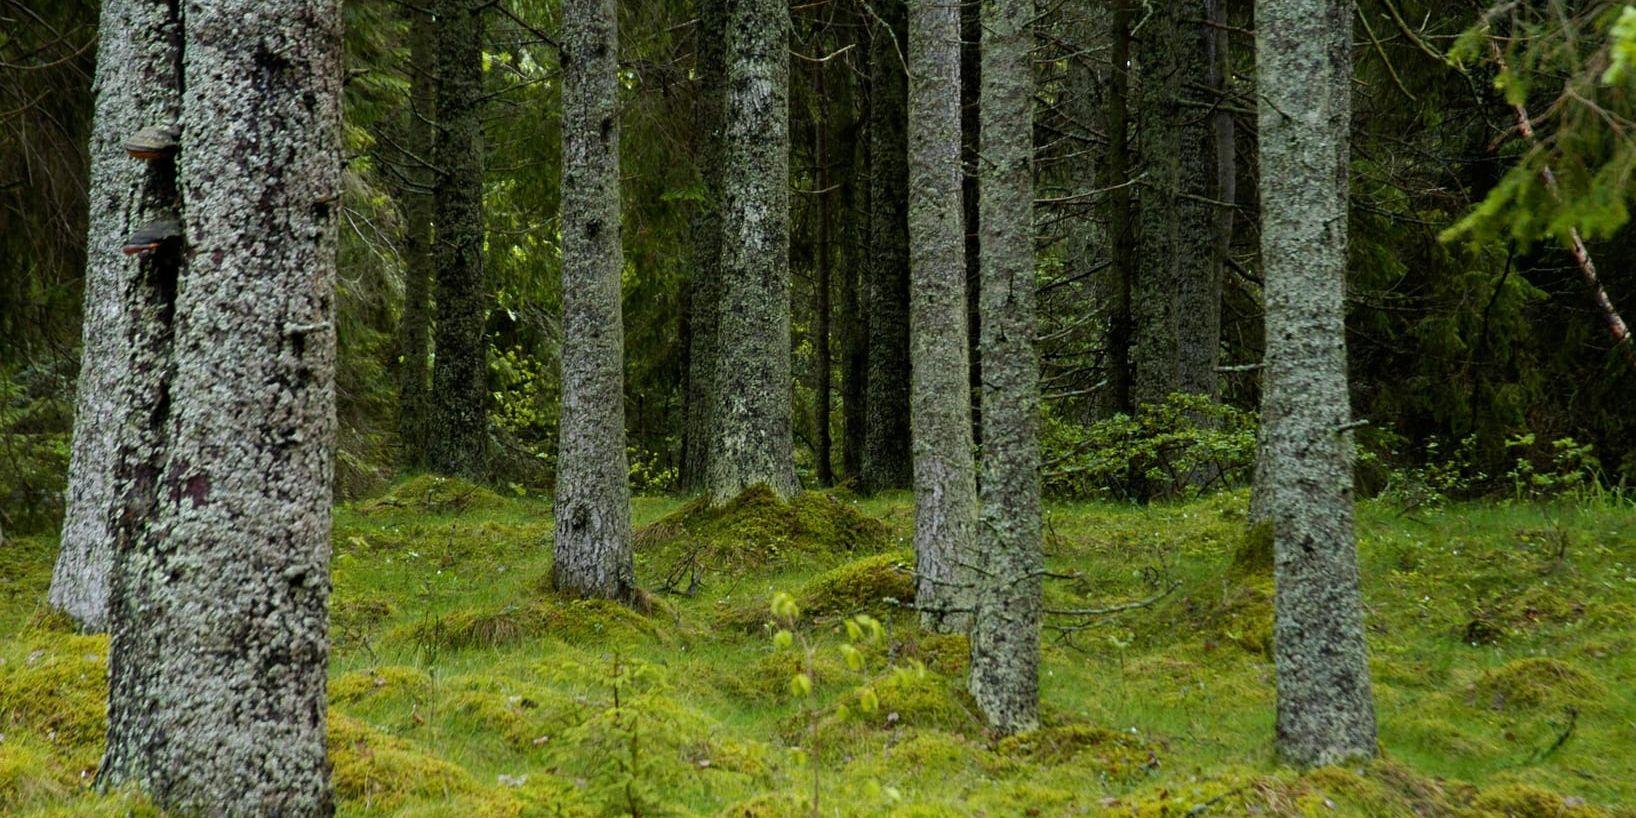 Direktiven för statliga skogsjätten Sveaskog bör ändras för att tydliggöra att områden med höga naturvärden inte får avverkas, anser flera riksdagspartier enligt en enkät från Världsnaturfonden. Arkivbild.